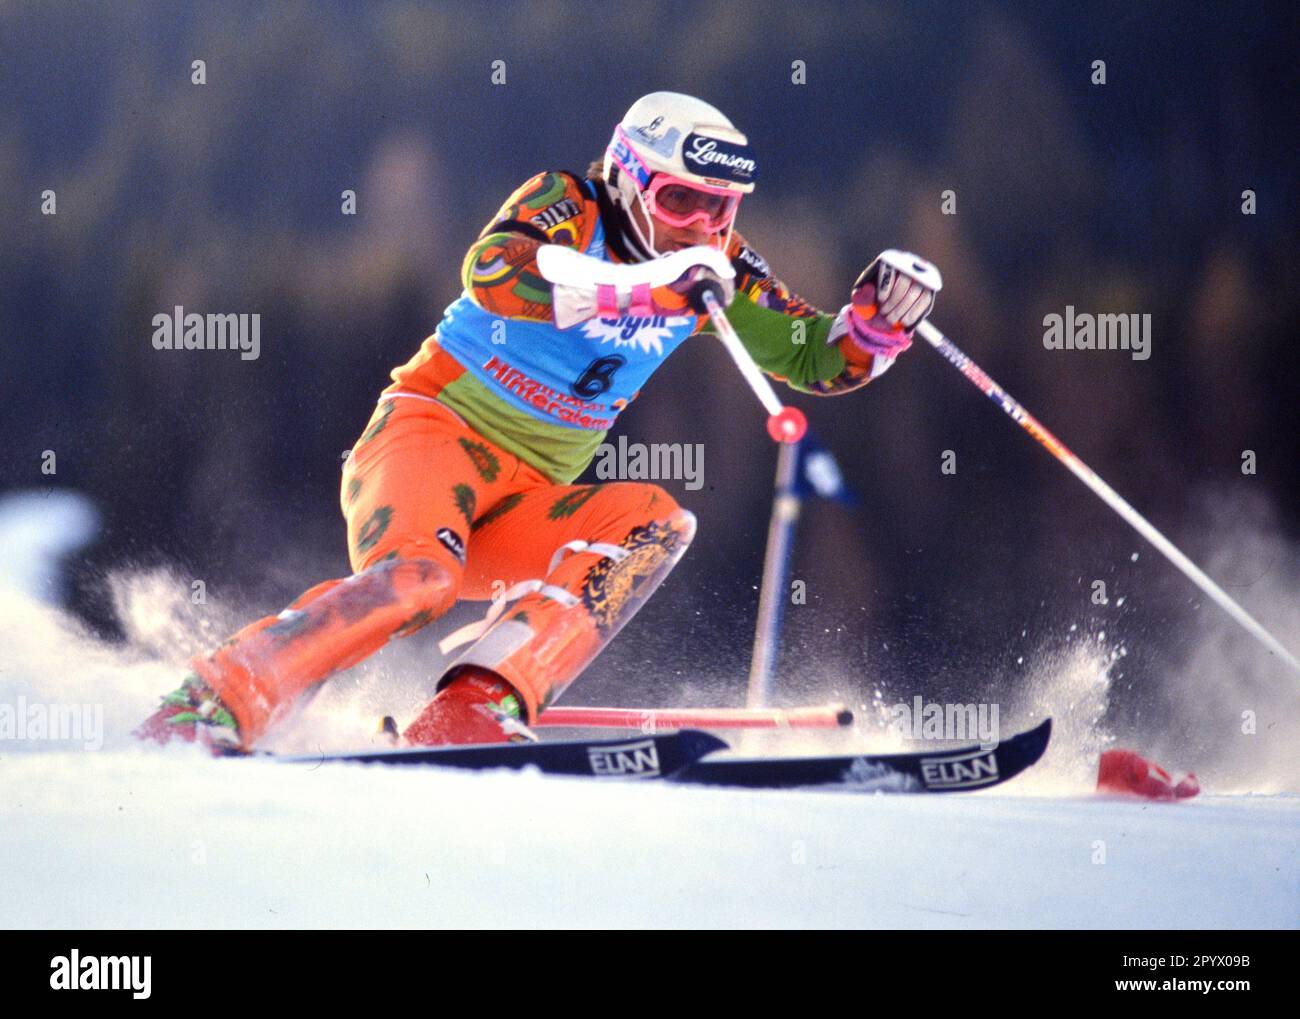 STAGIONE SCIISTICA ALPIN 90/91 Campionati del mondo 1991 Saalbach-Hinterglemm Slalom Men 22.01.1991 Armin BITTNER (GER) xxNOxMODELxRELEASExx [traduzione automatica]- AUSTRIA OUT Foto Stock